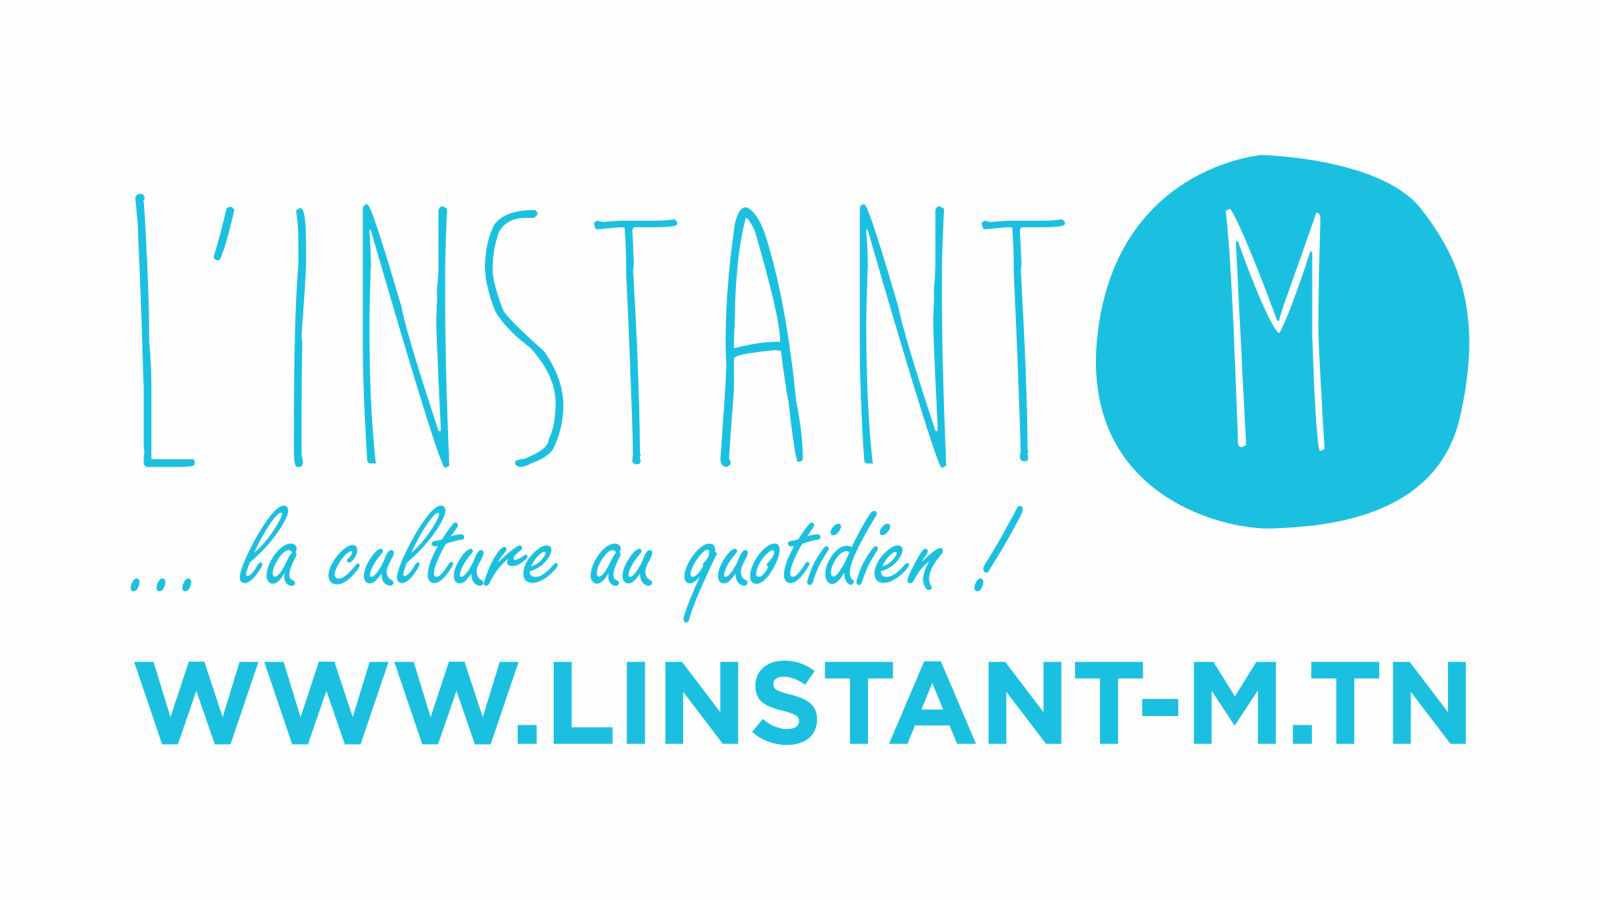 المجلة الرقمية linstant-m.tn تحقق نجاحا باهرا في المشهد الثقافي والفني